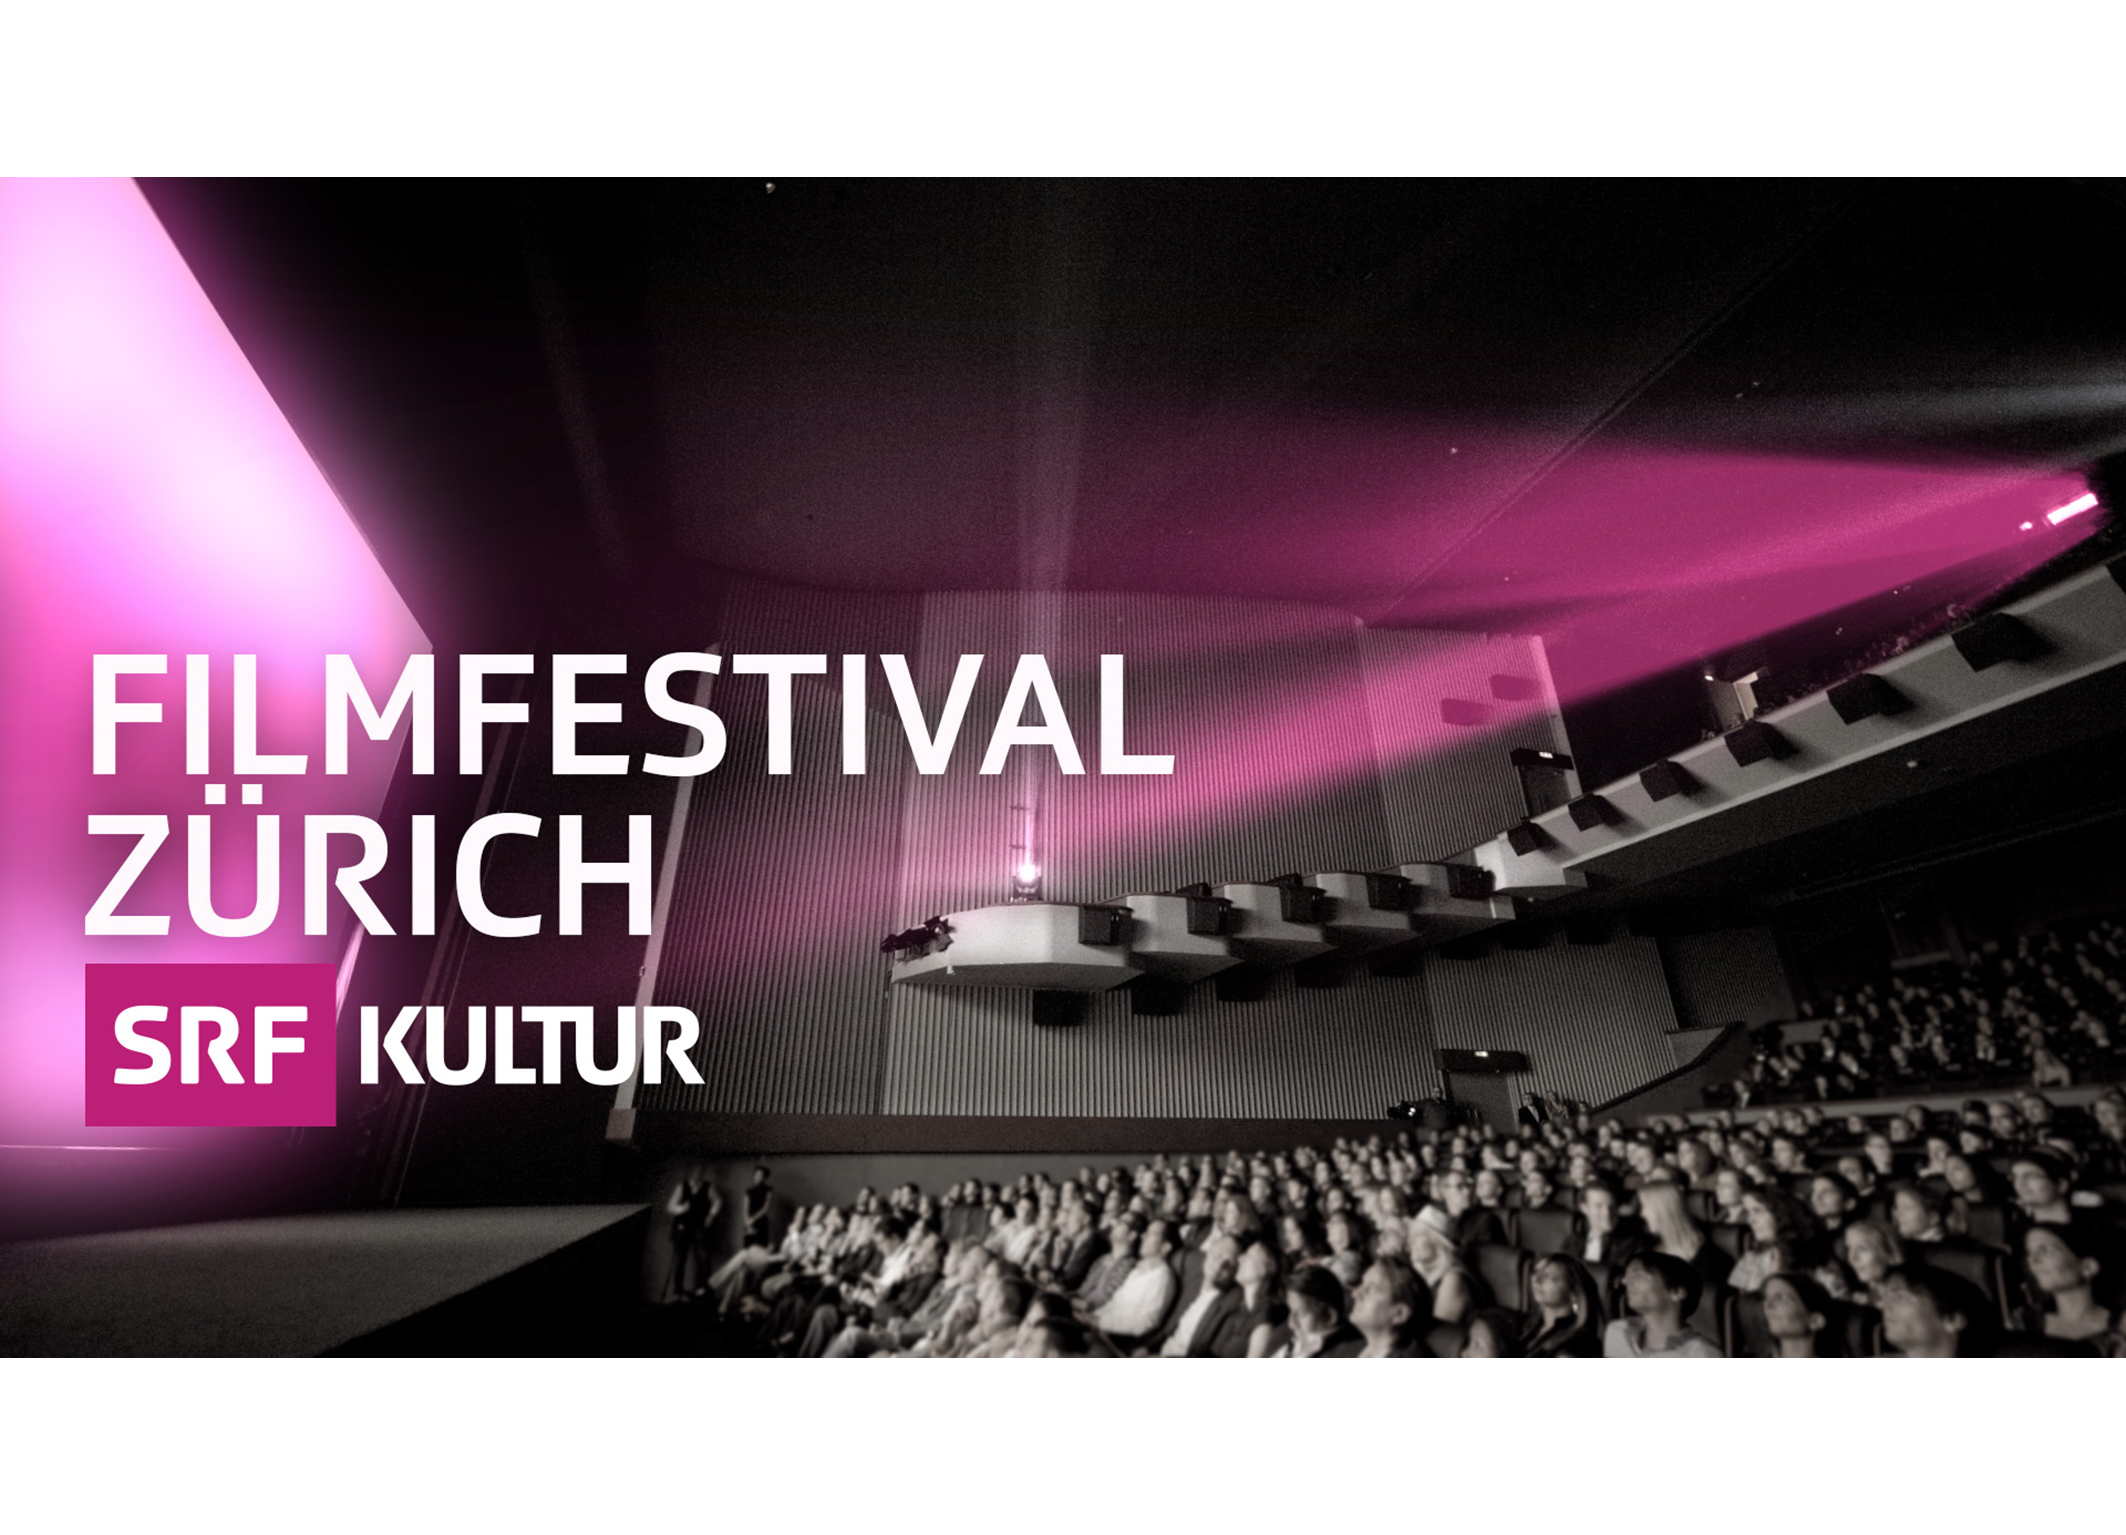 Zürich Filmfestival 2016 Keyvisual 2016